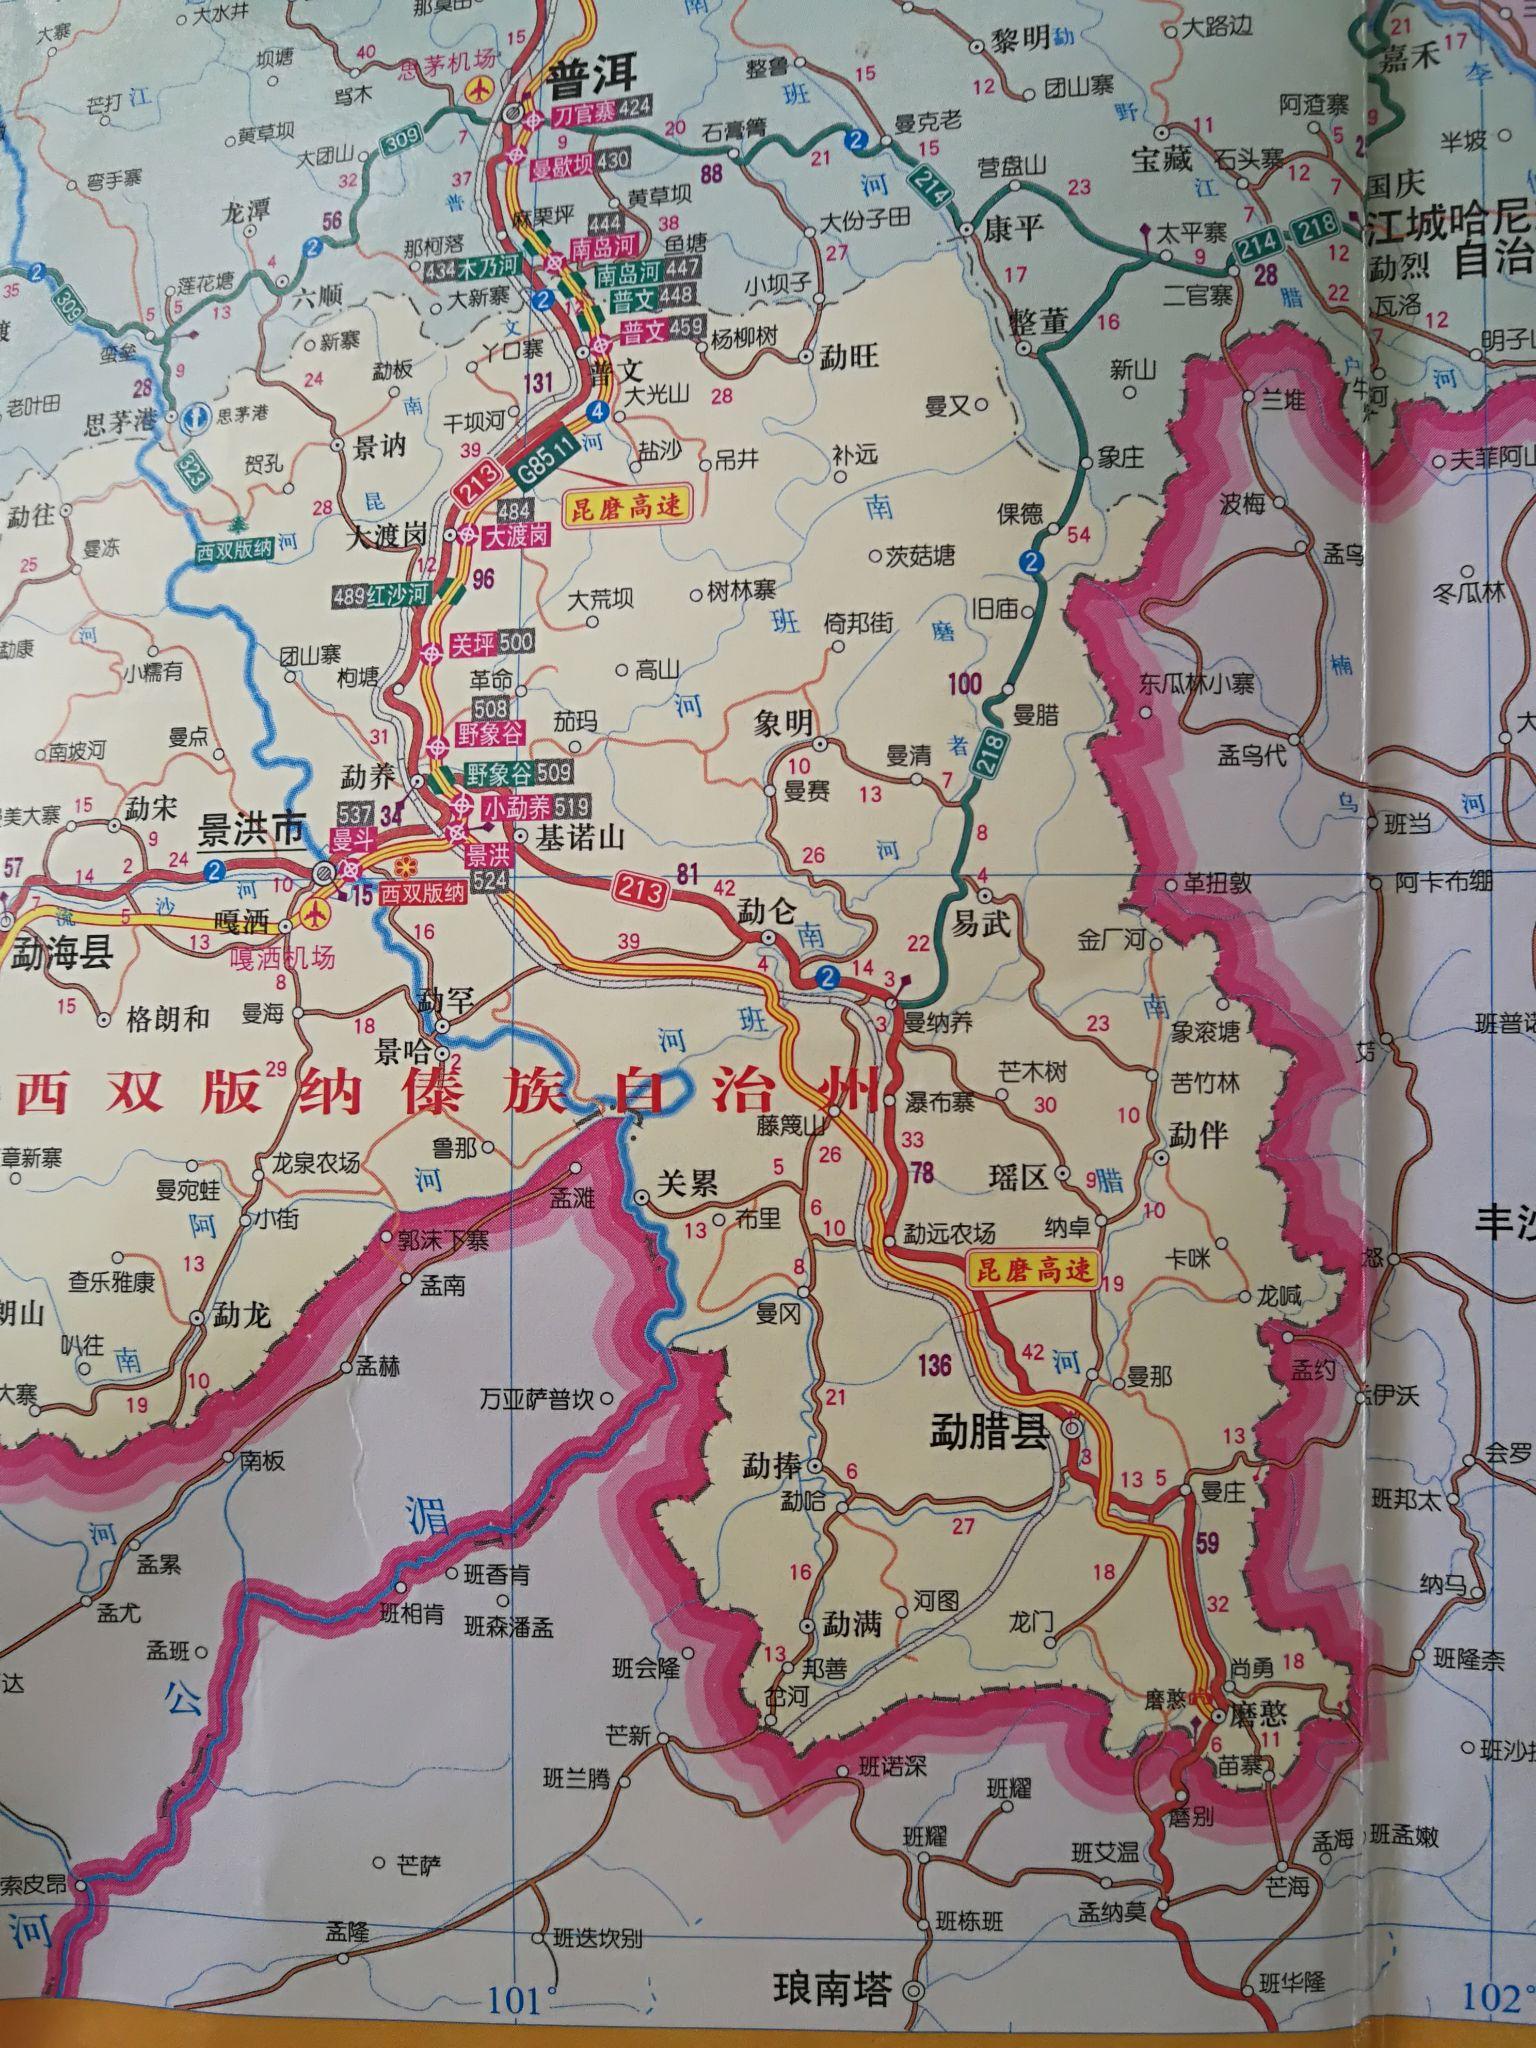 谁能帮我介绍一下云南的芒市畹町磨憨从没有听说过这些地名的我要去做